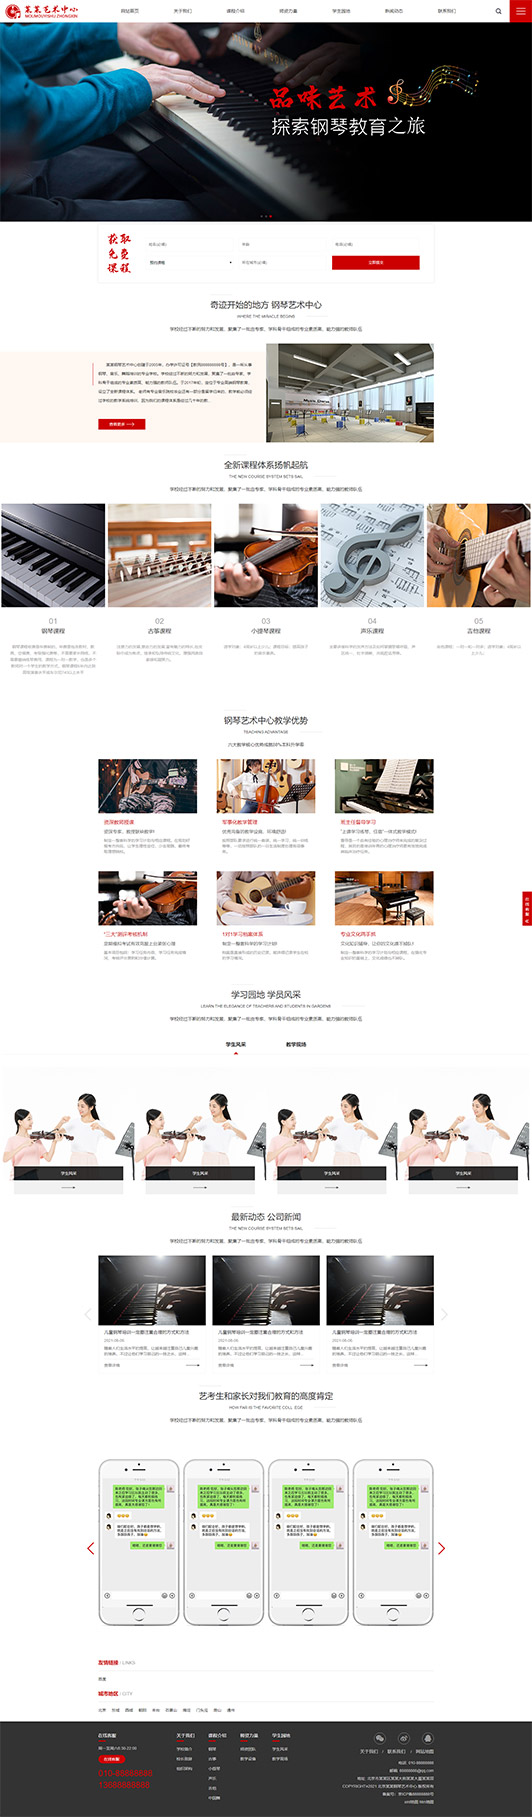 安阳钢琴艺术培训公司响应式企业网站